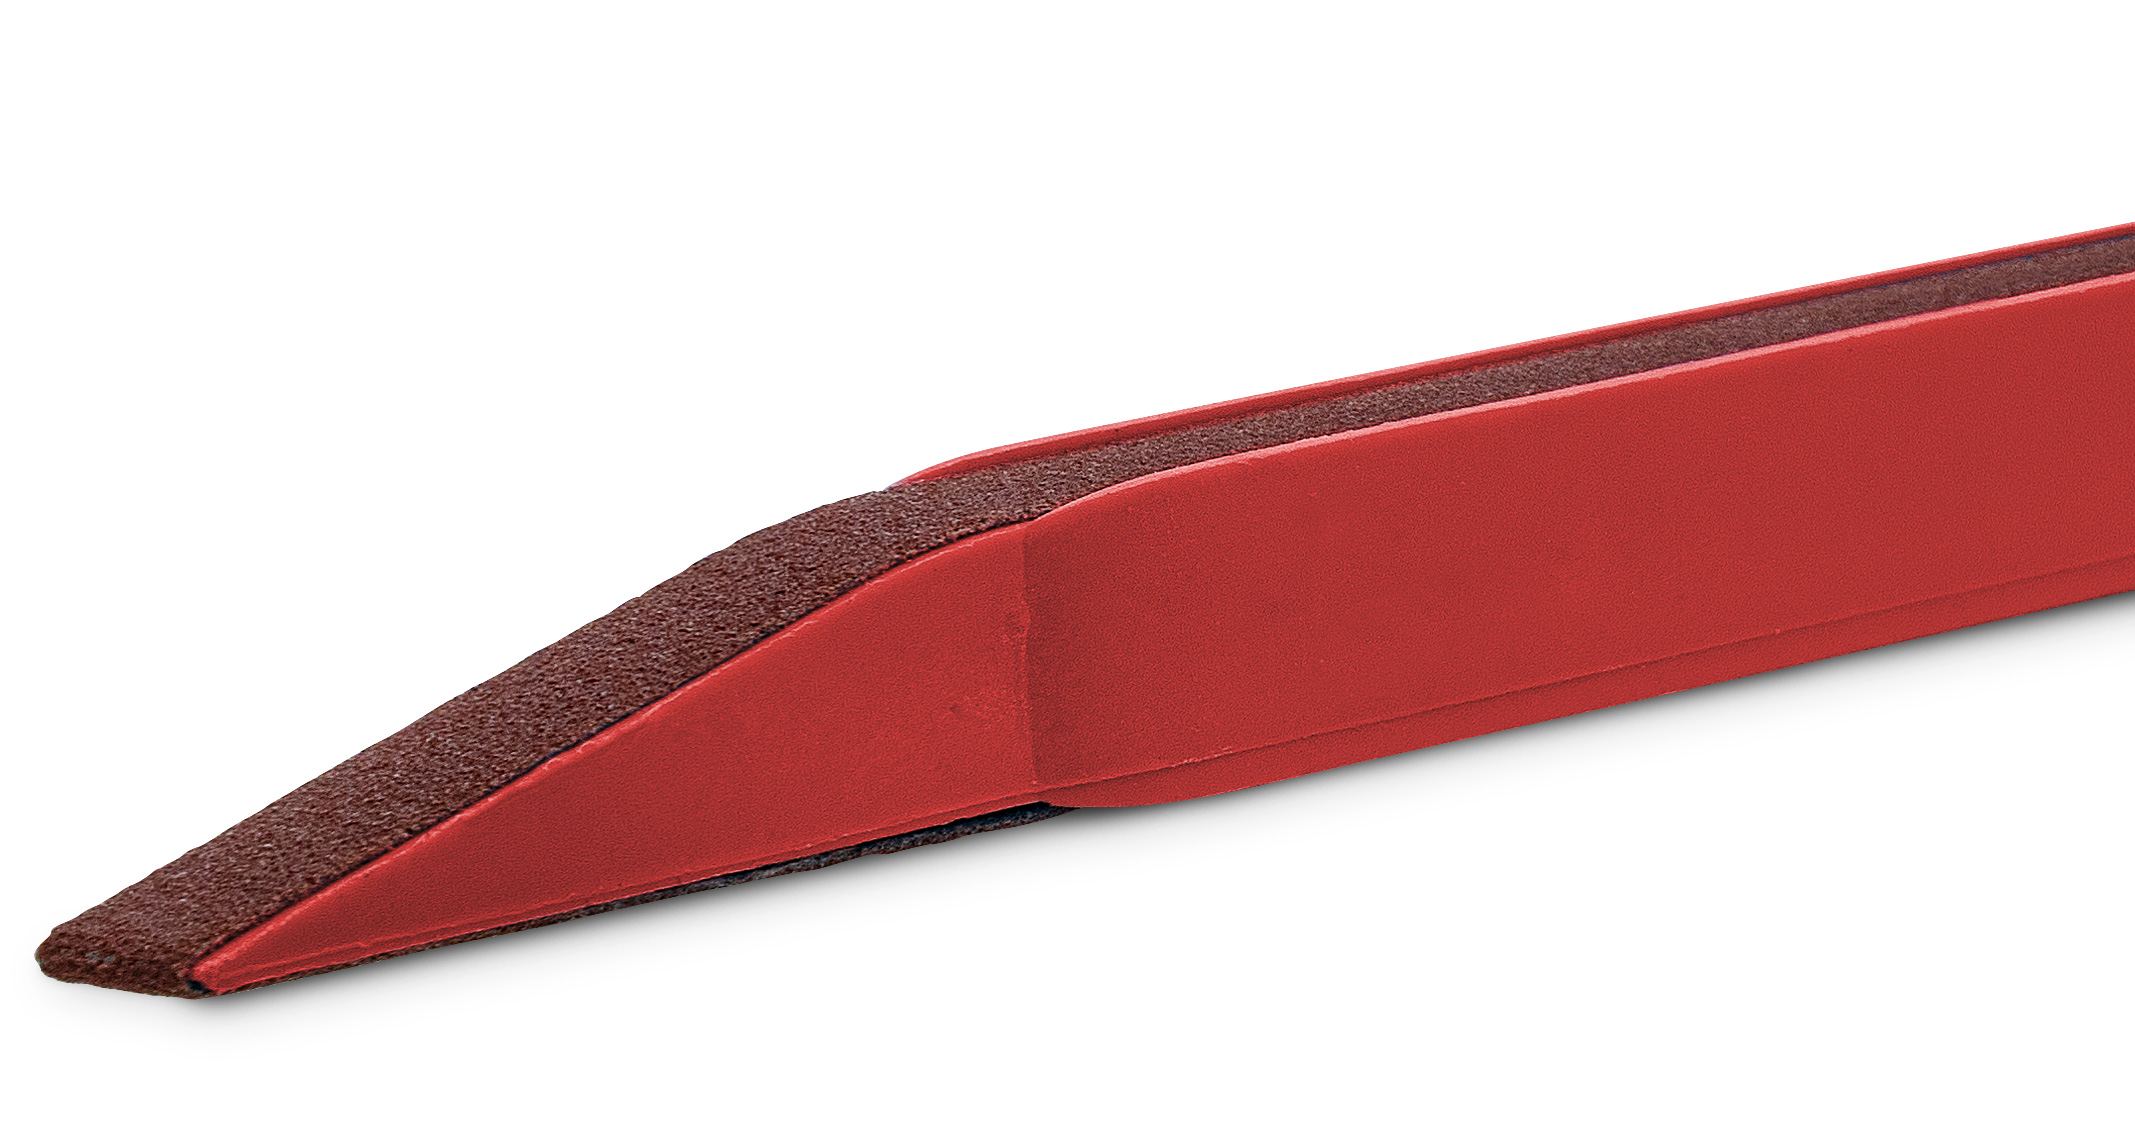 Schuurstaafje, korrel 120, rood, voor schuurbanden met 7 x 330 mm